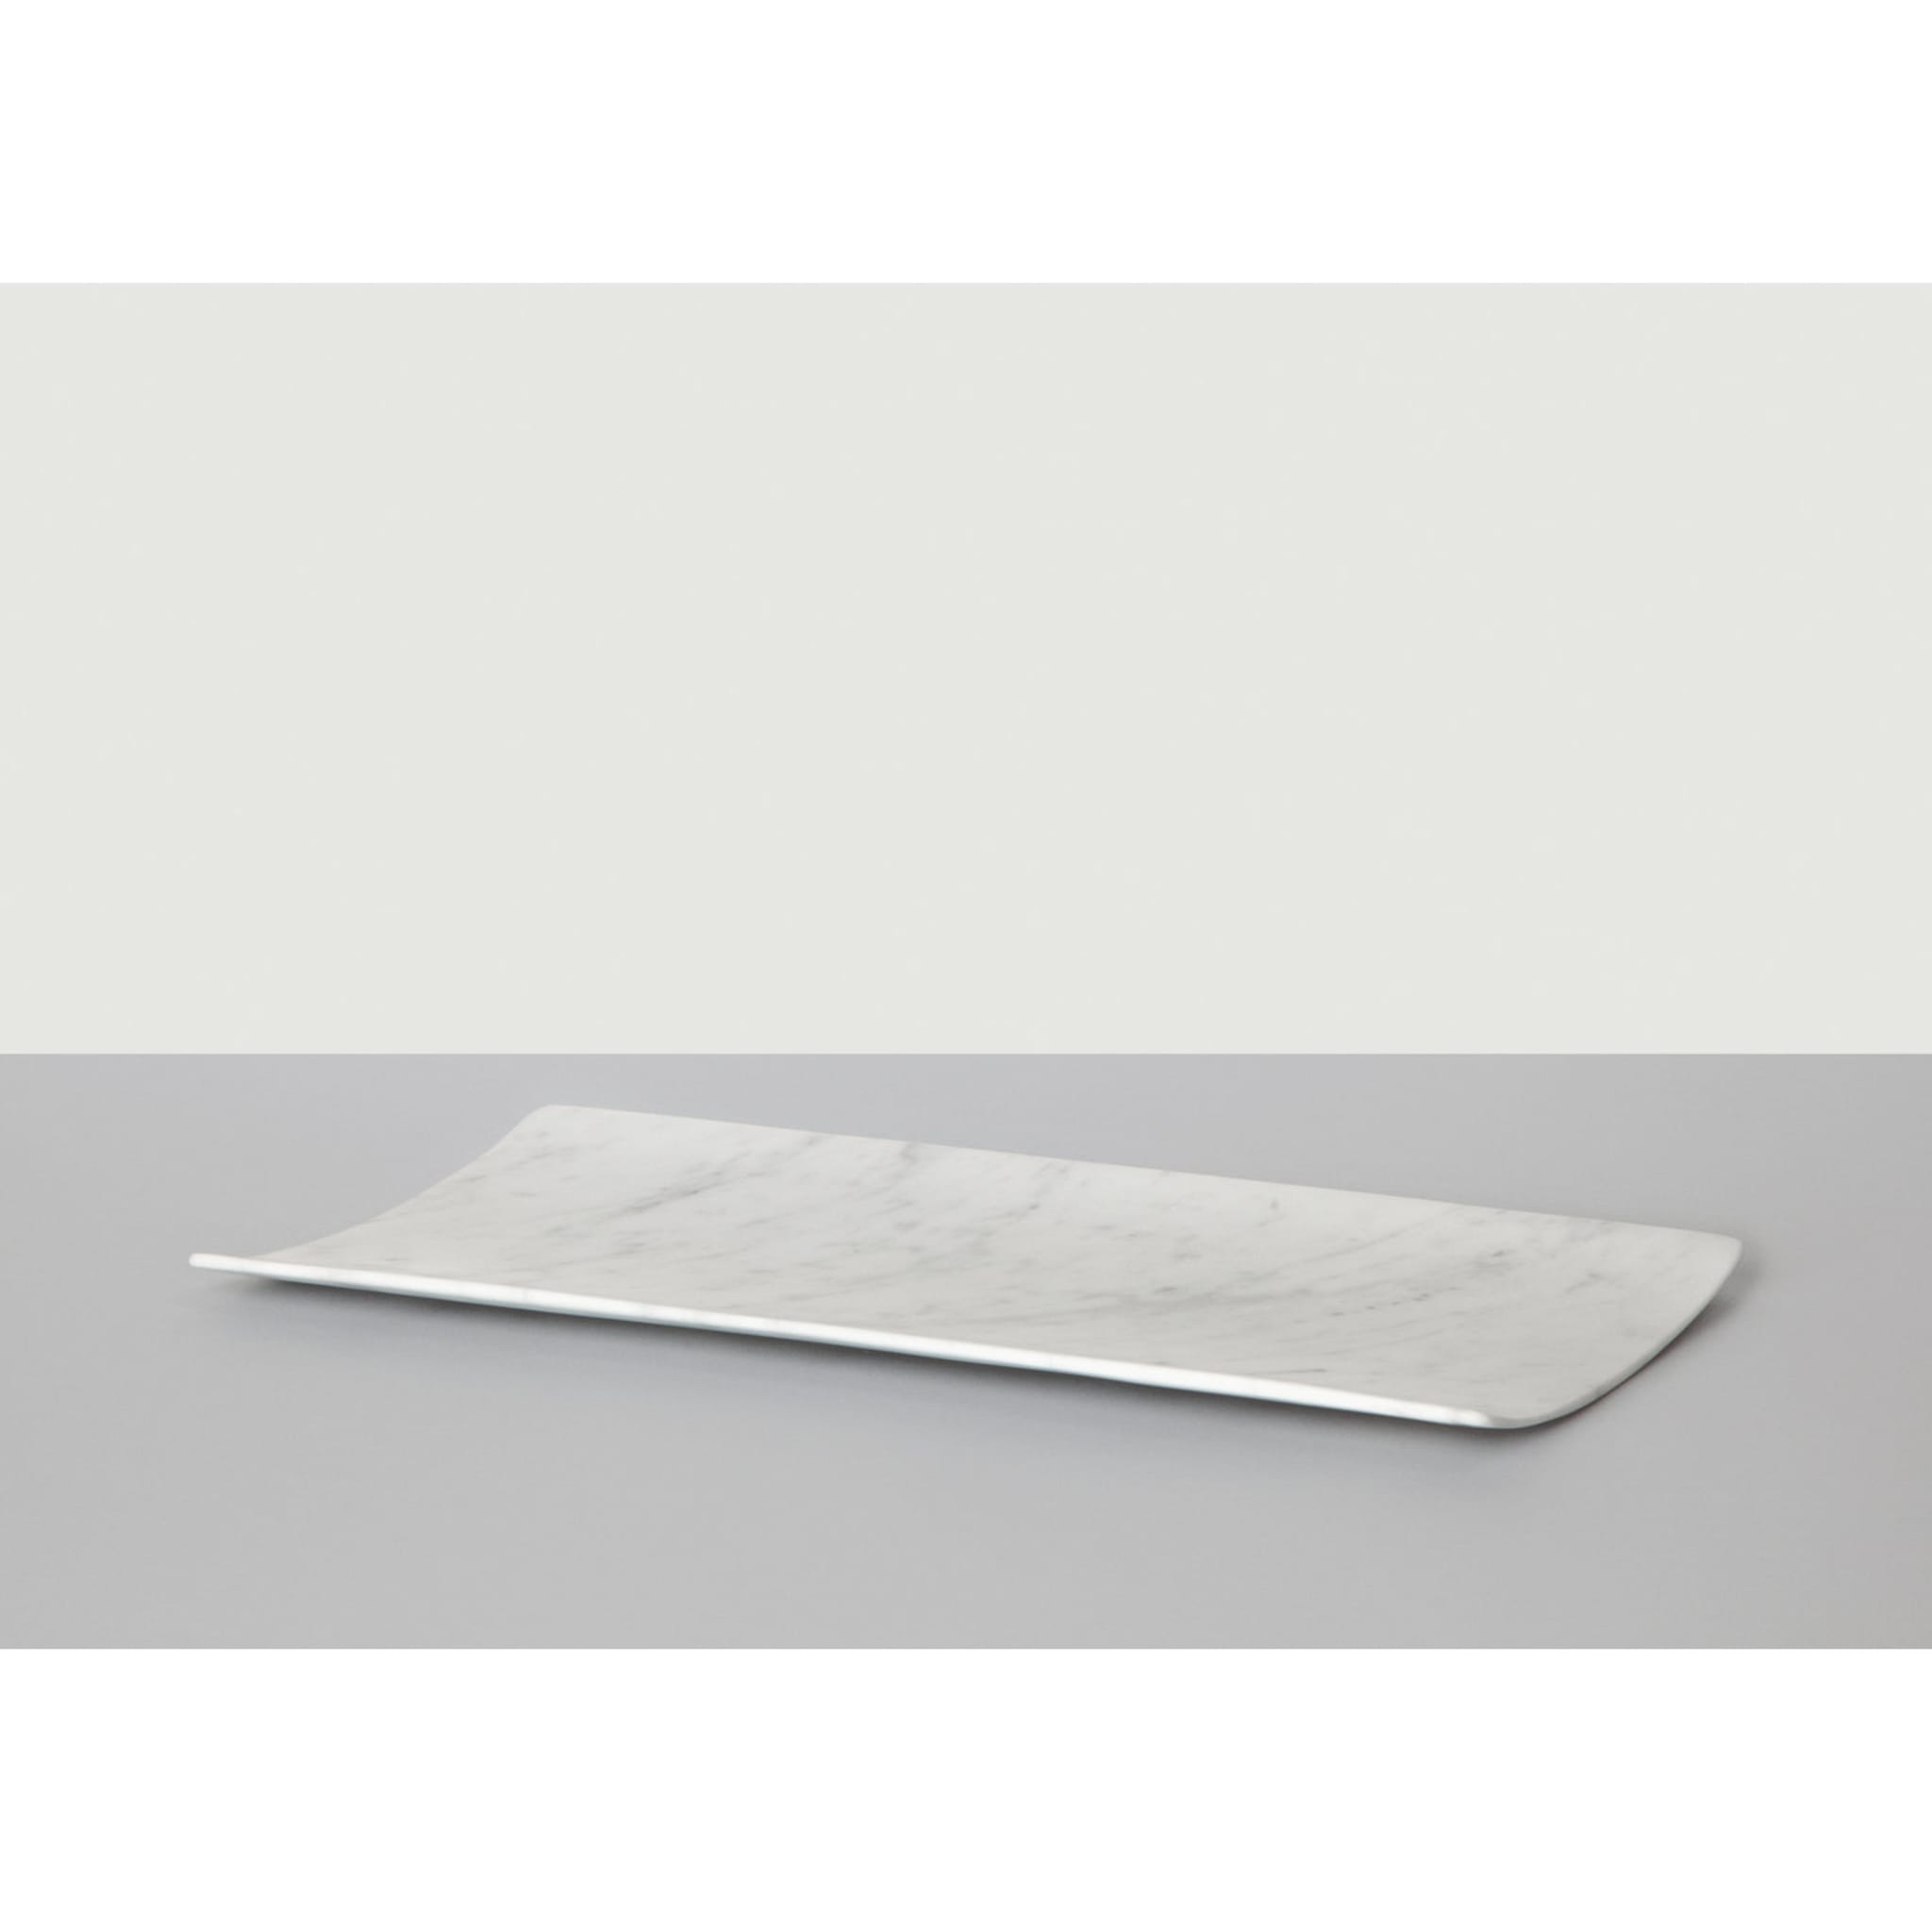 Curvati großes Tablett aus weißem Carrara von Studioformart - Alternative Ansicht 4